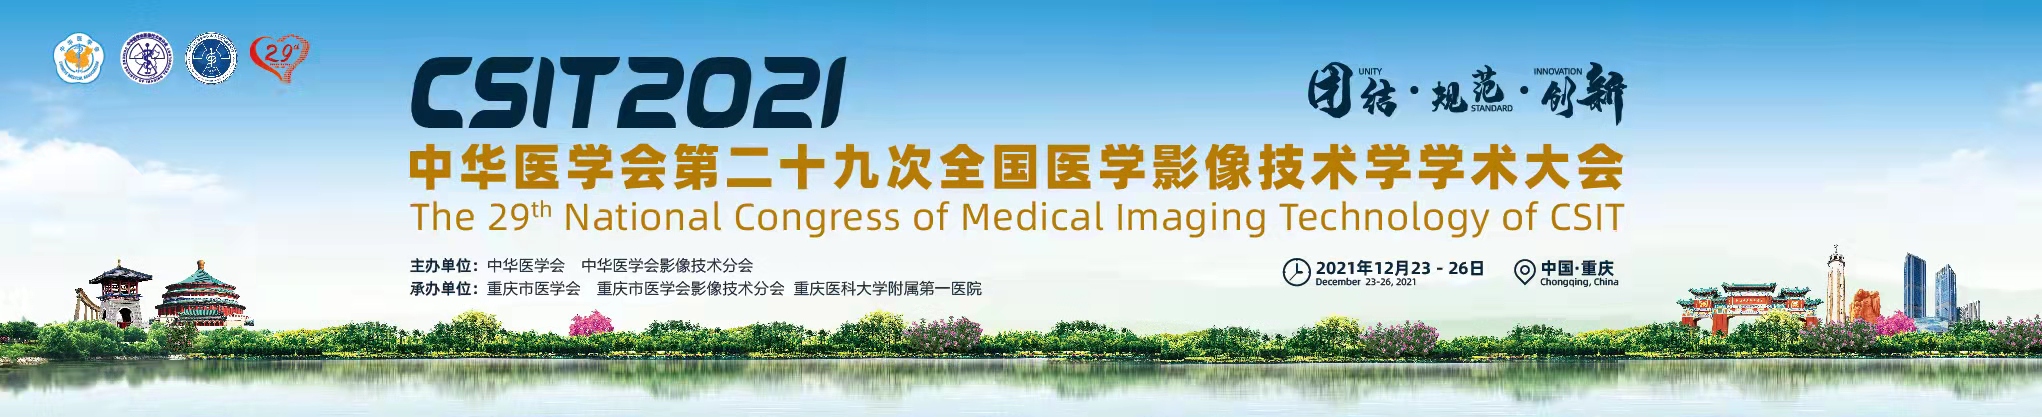 中华医学会第二十九次全国医学影像技术学学术大会